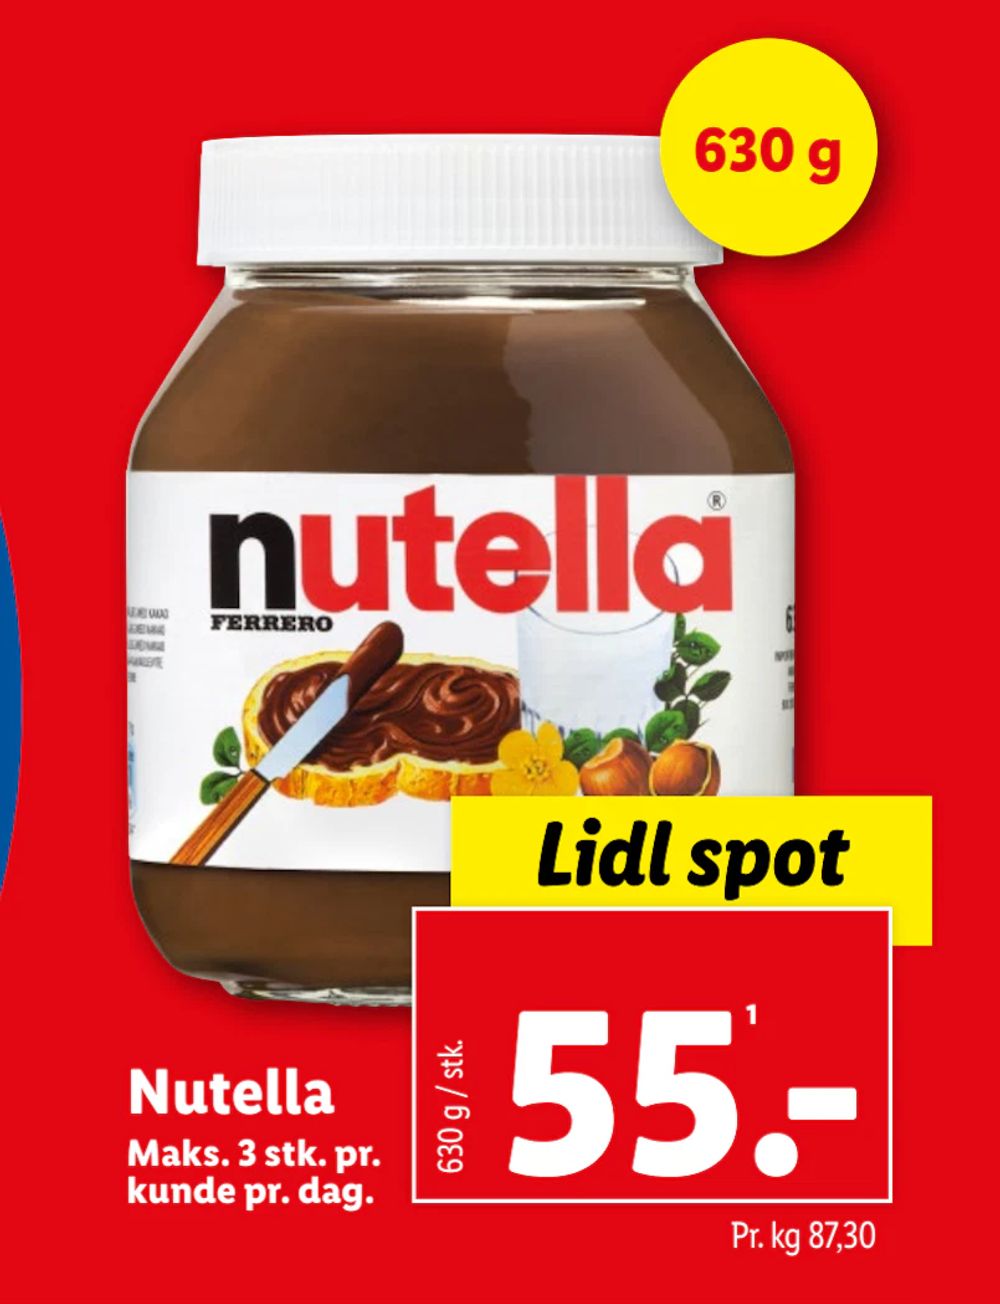 Tilbud på Nutella fra Lidl til 55 kr.